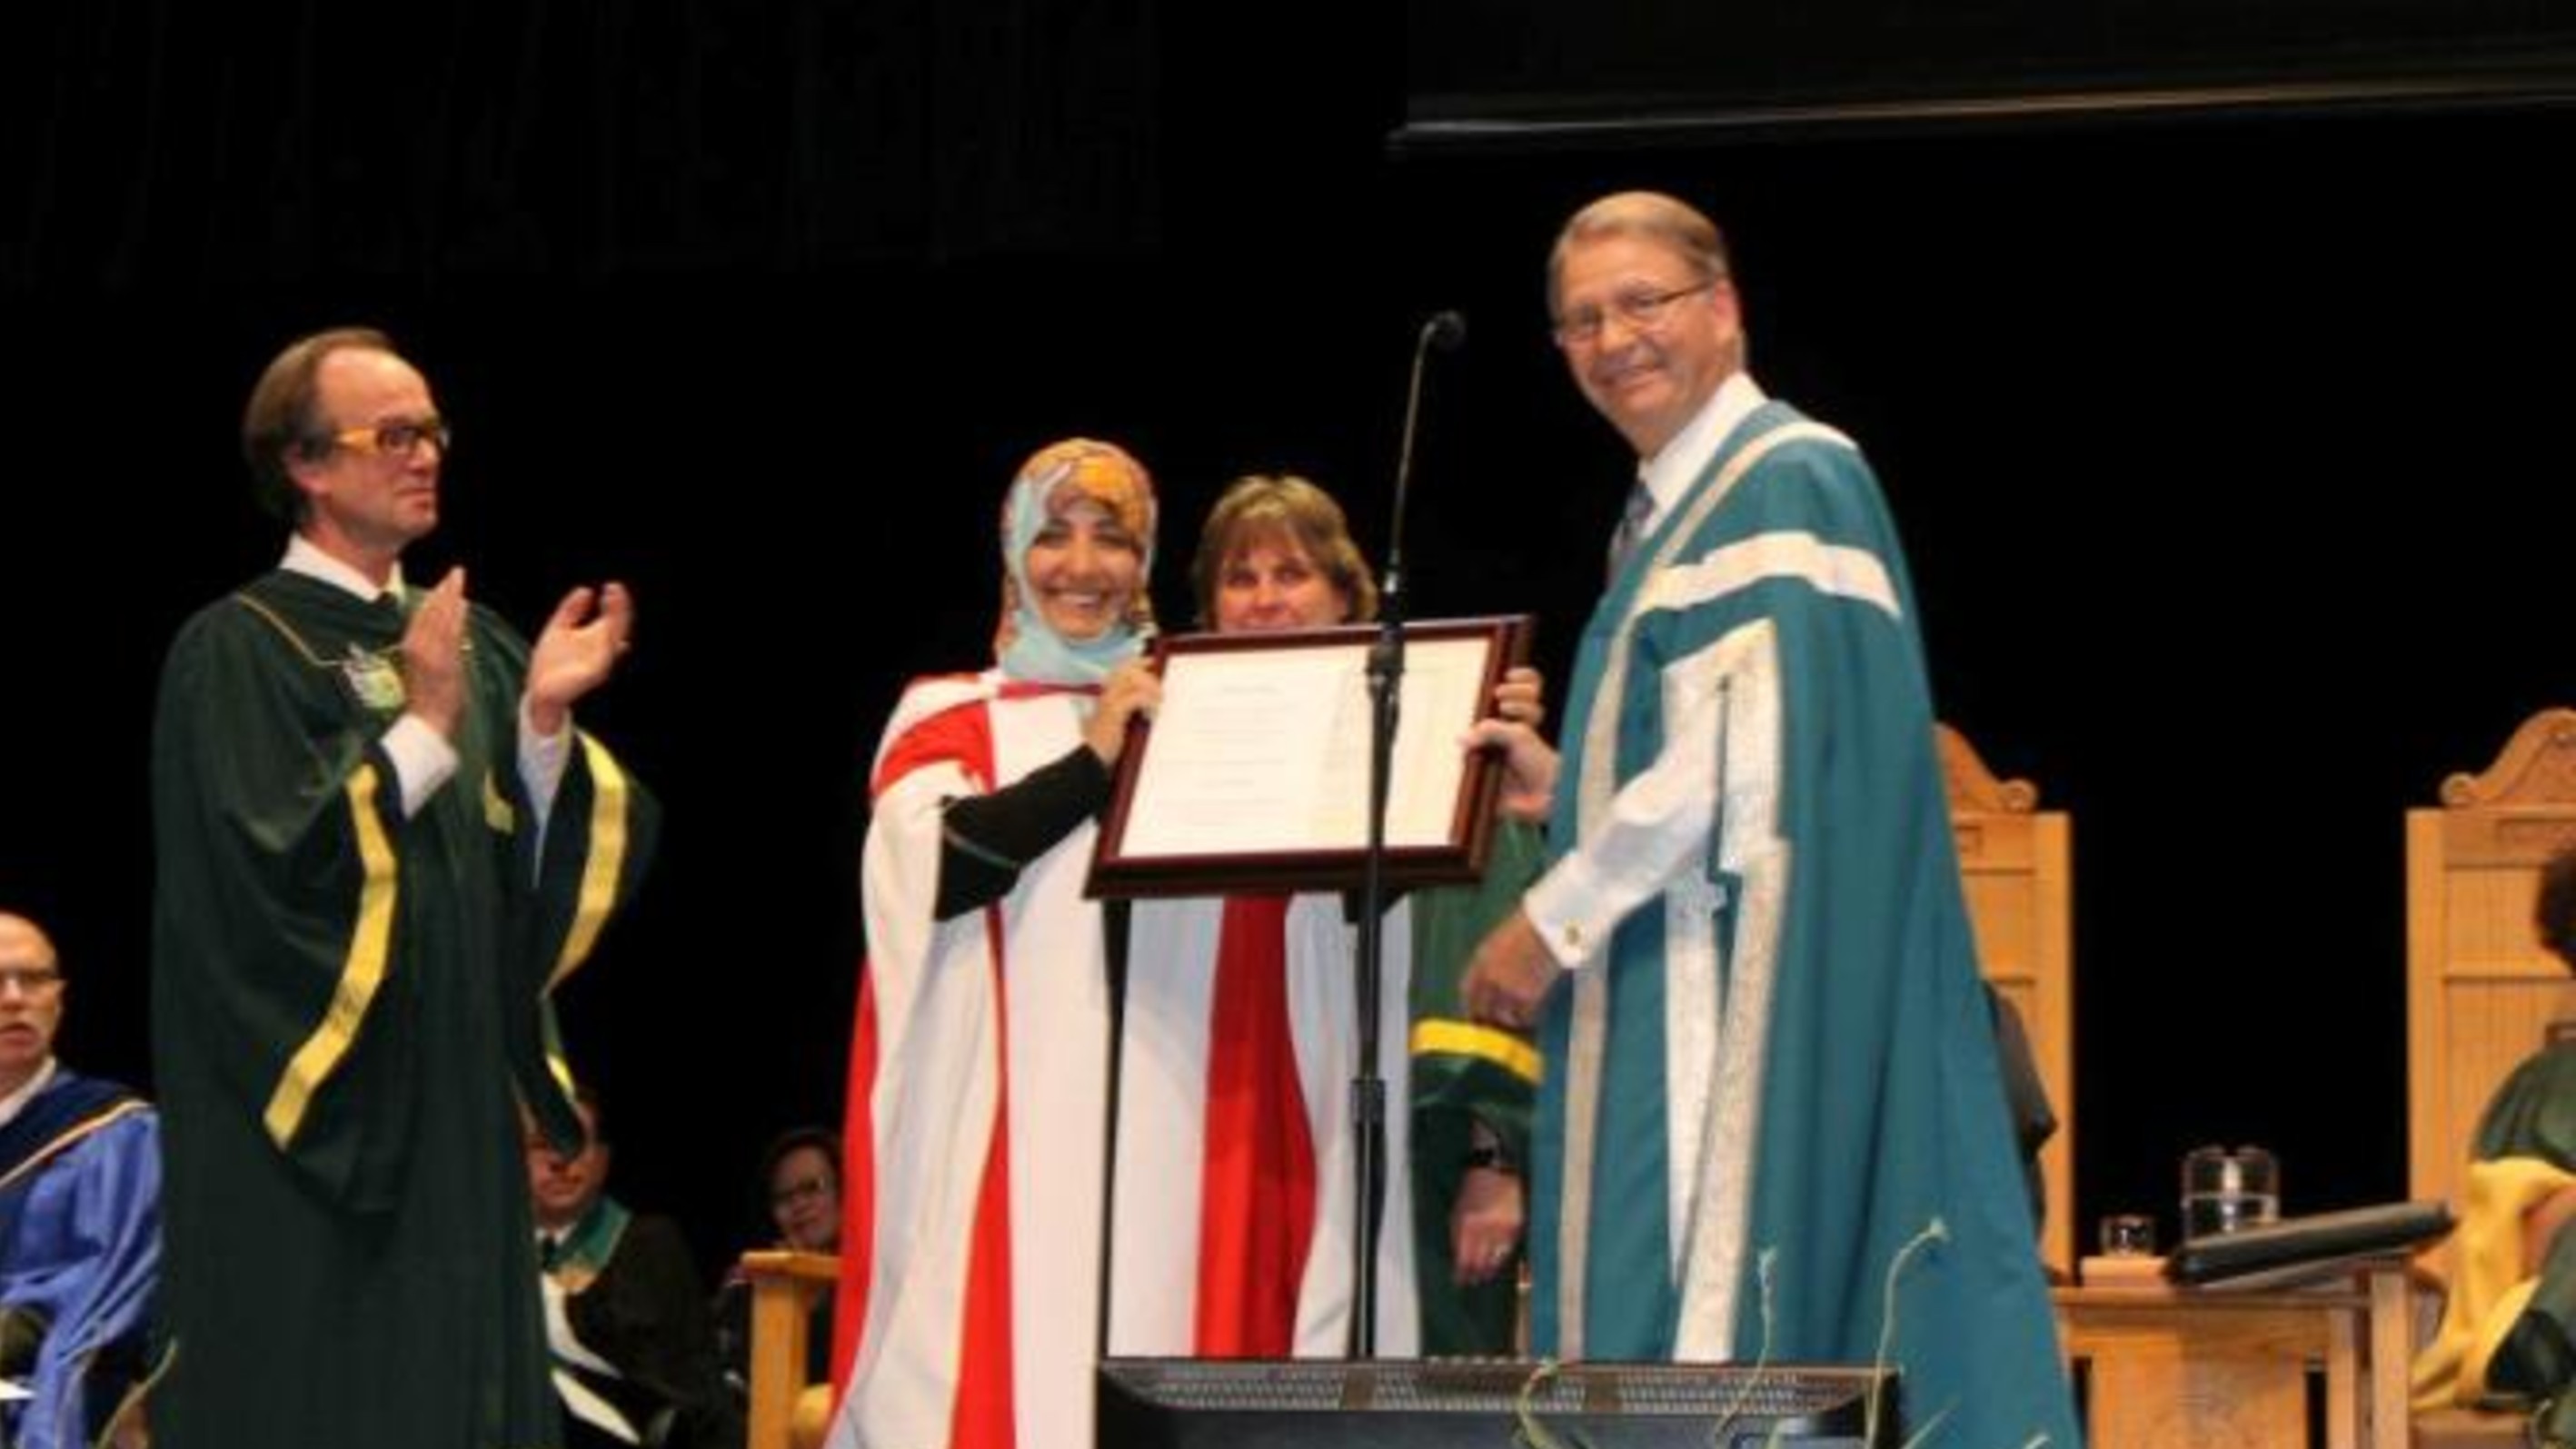 كلمة الناشطة الحائزة على جائزة نوبل للسلام توكل كرمان خلال تسلمها الدكتوراه الفخرية في القانون الدولي من جامعة ألبرتا - كندا